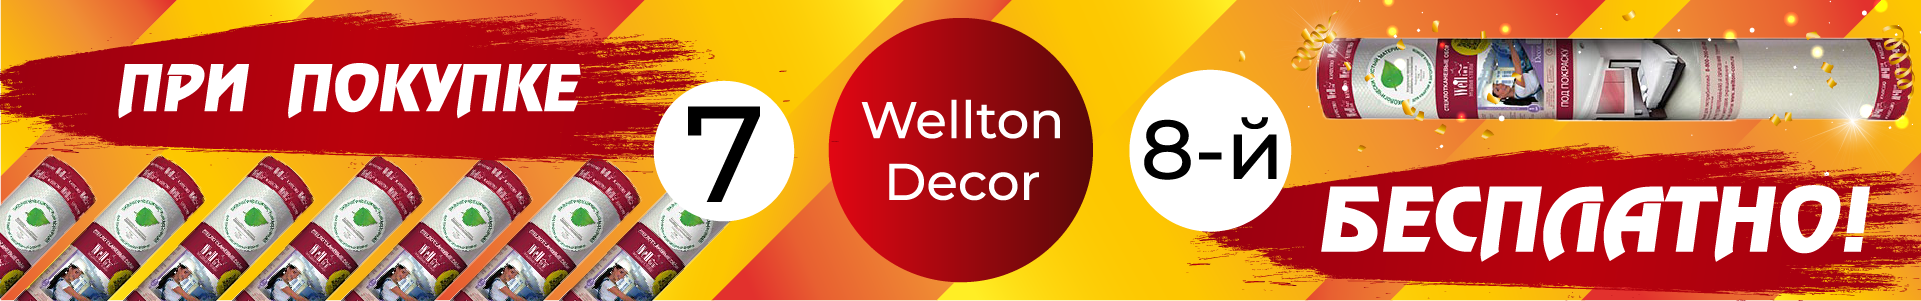 Акция на Wellton Decor!